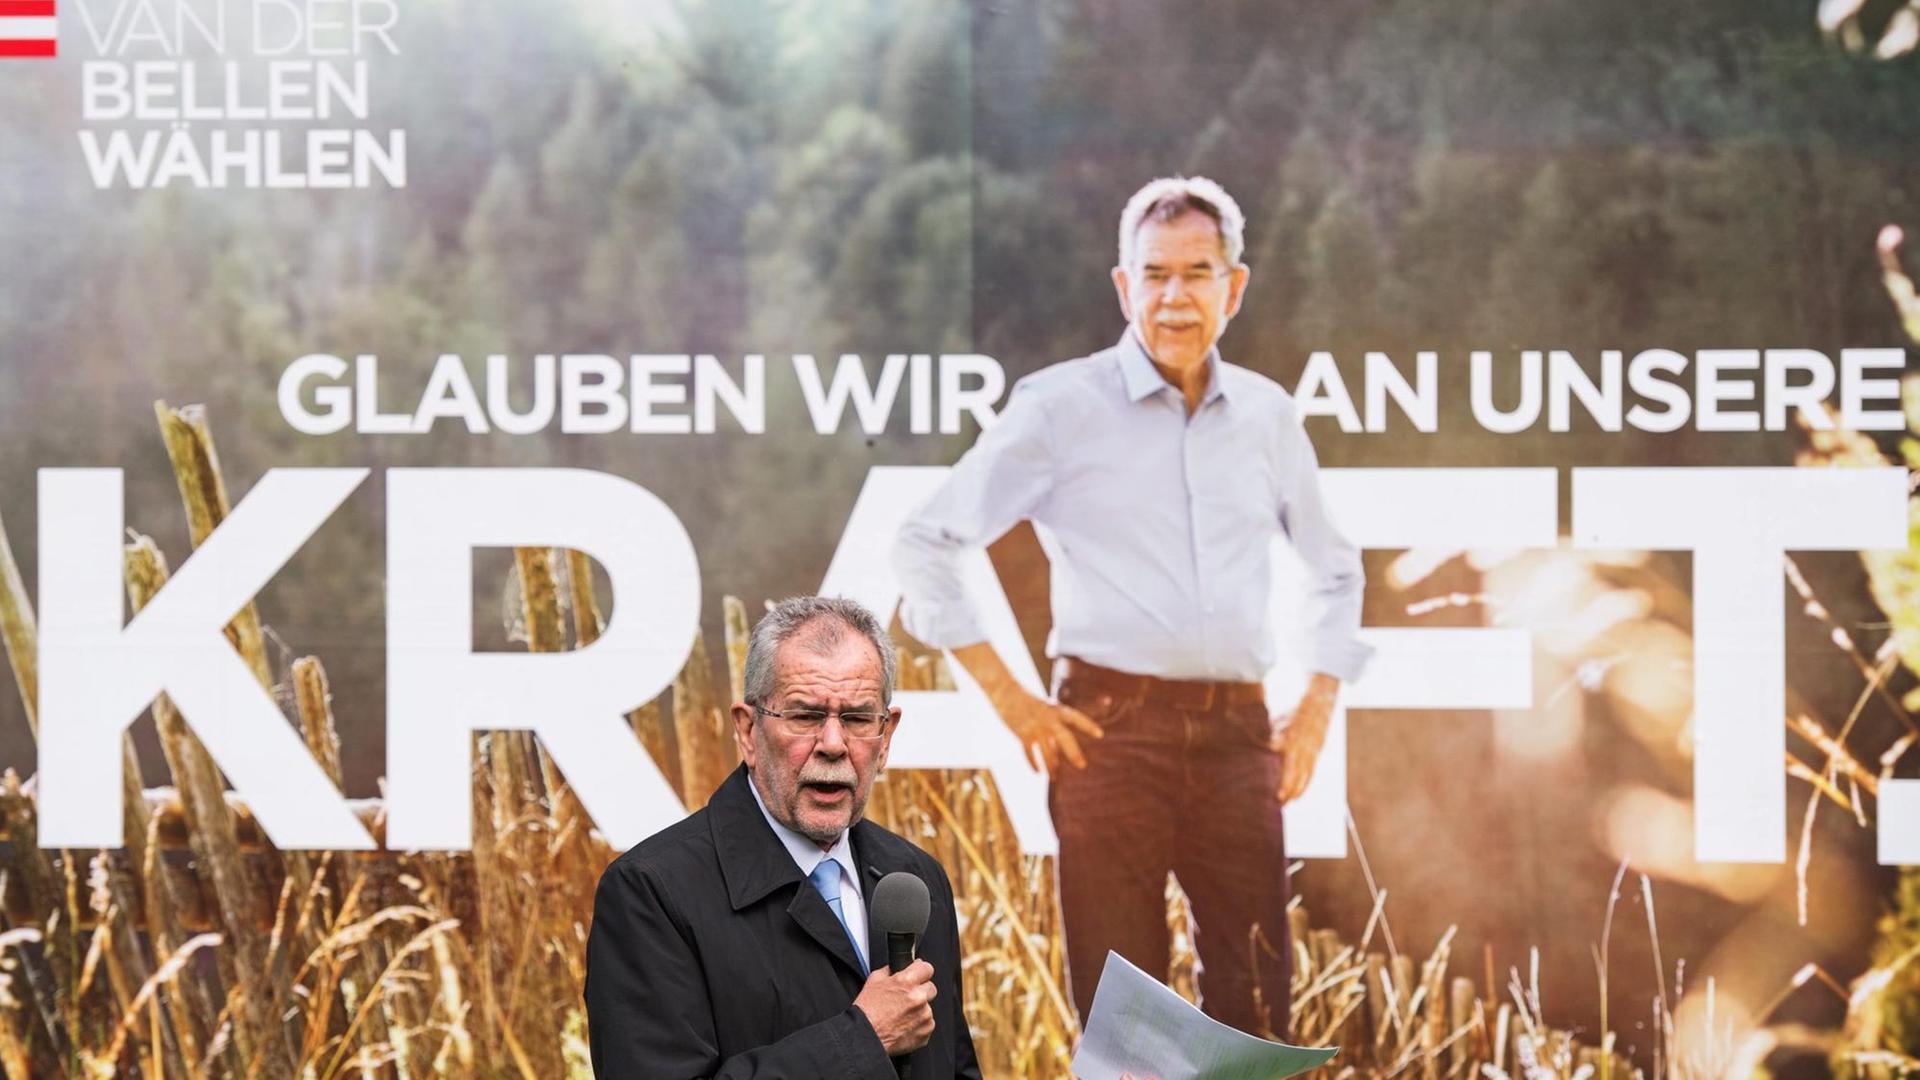 Alexander van der Bellen kandidiert zum Posten des österreichischen Präsidenten. Hier vor einem Wahlplakat.